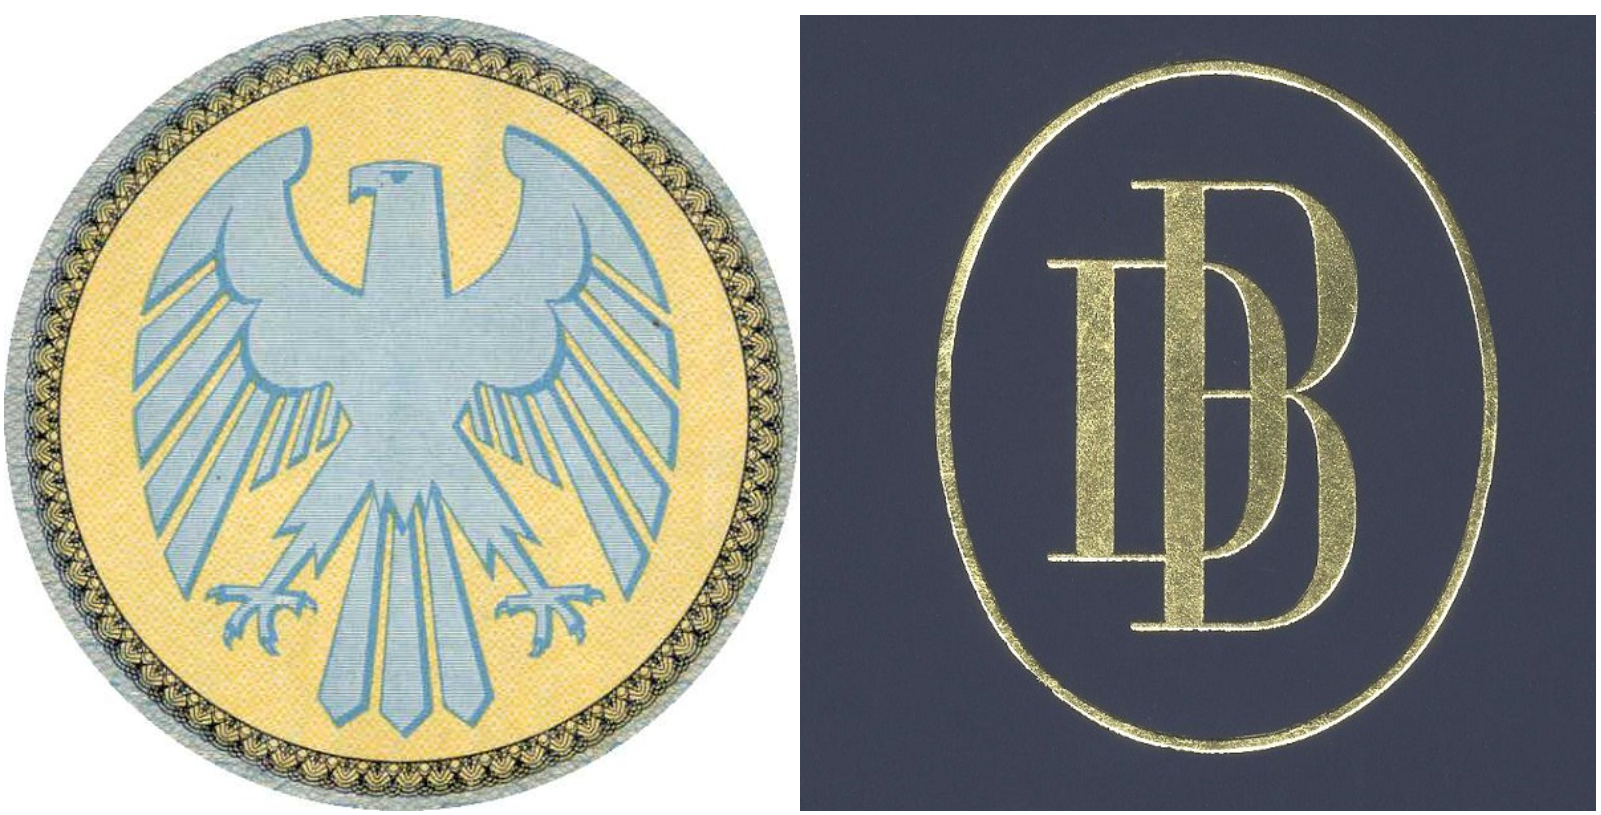 Old Deutsche Bank logos